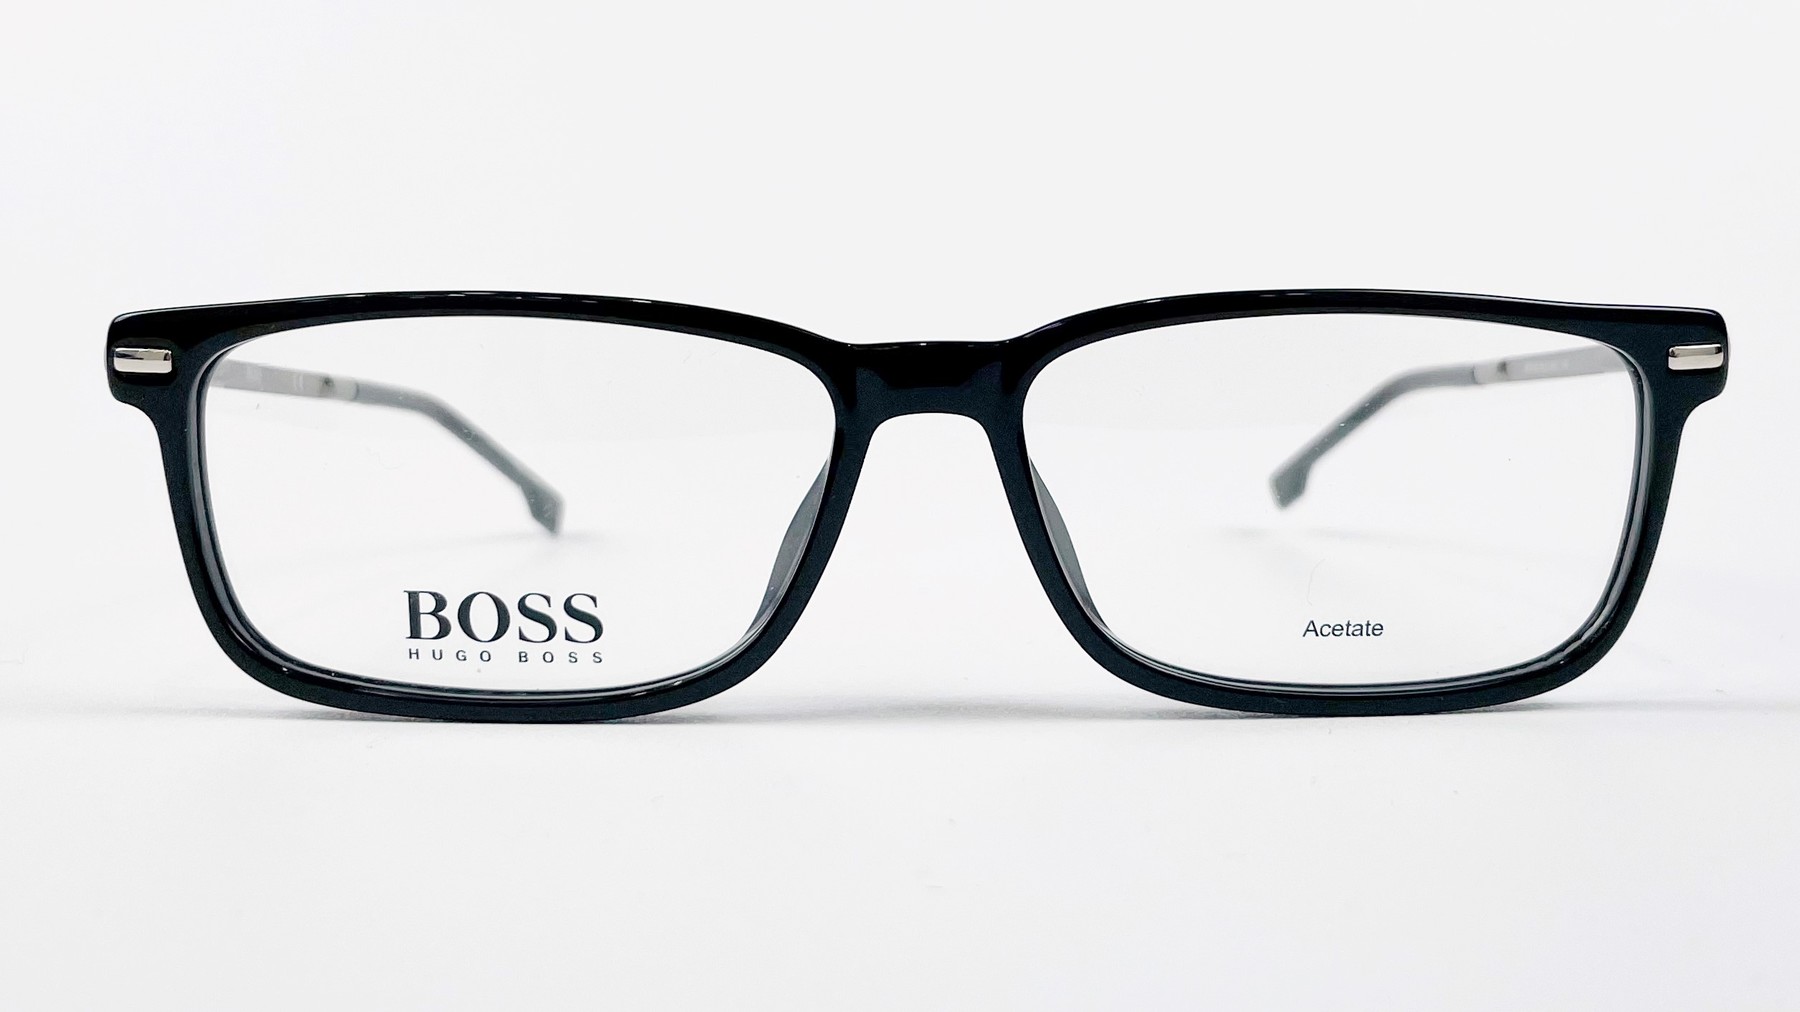 HUGO BOSS 0933 807, Korean glasses, sunglasses, eyeglasses, glasses